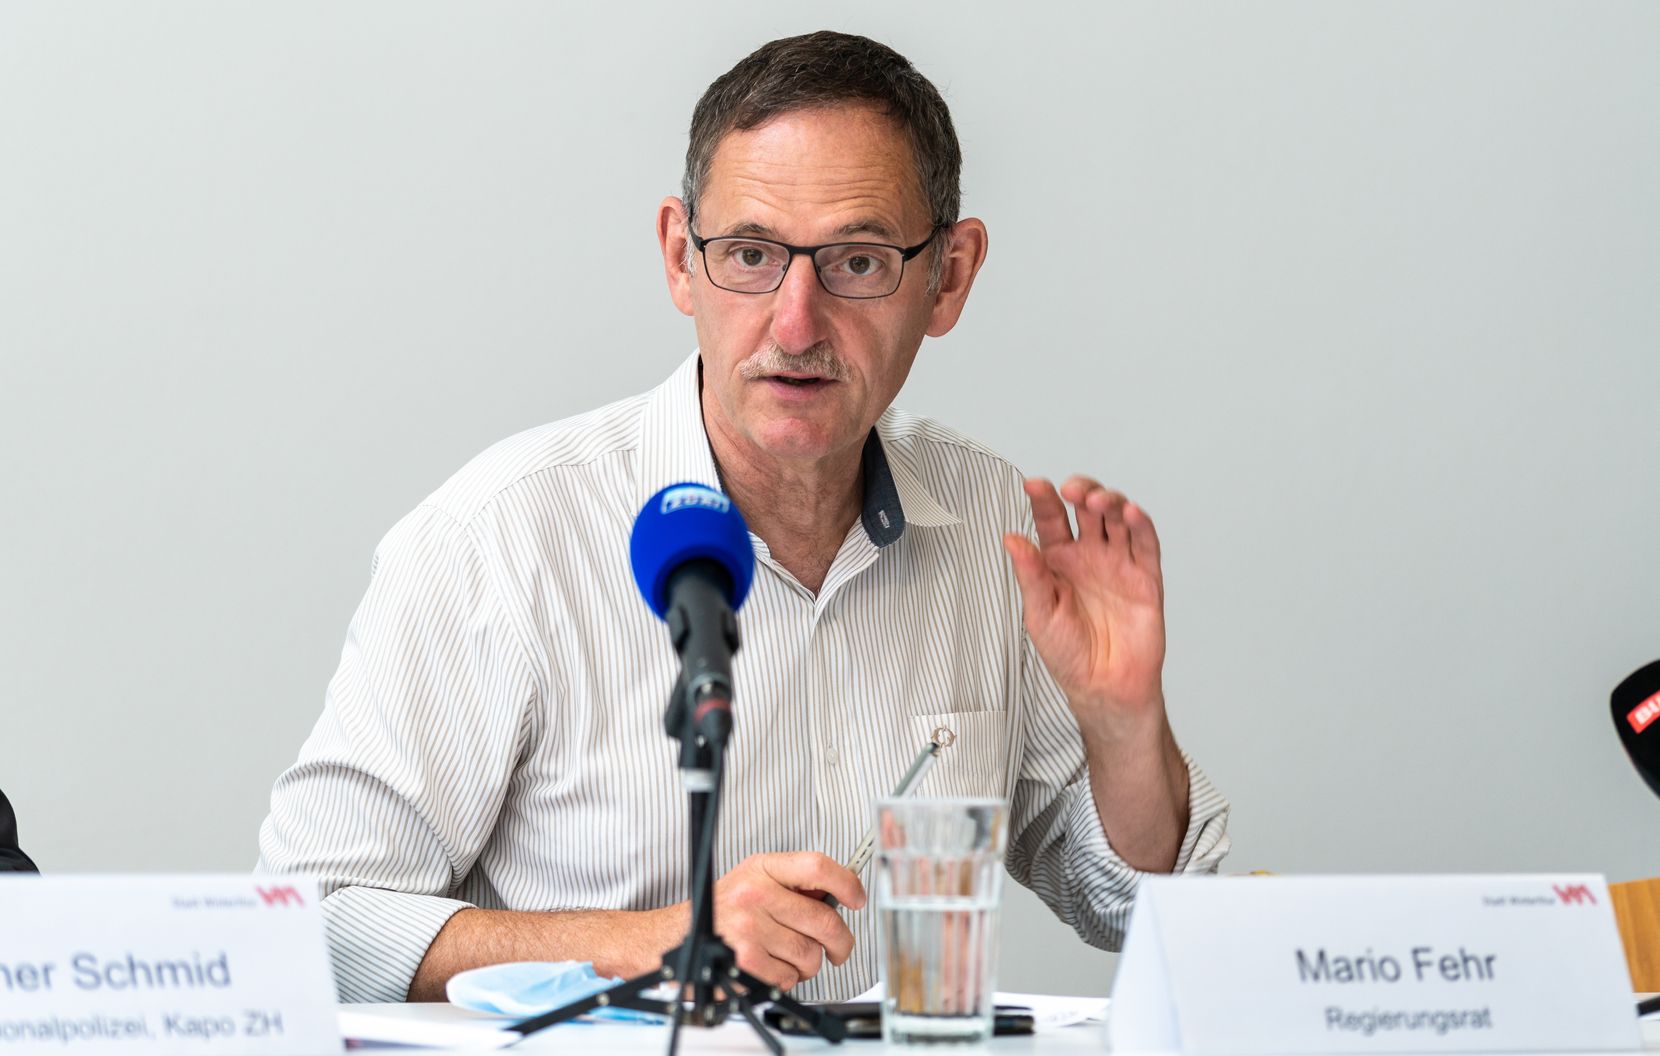 Mario Fehr, Regierungsrat